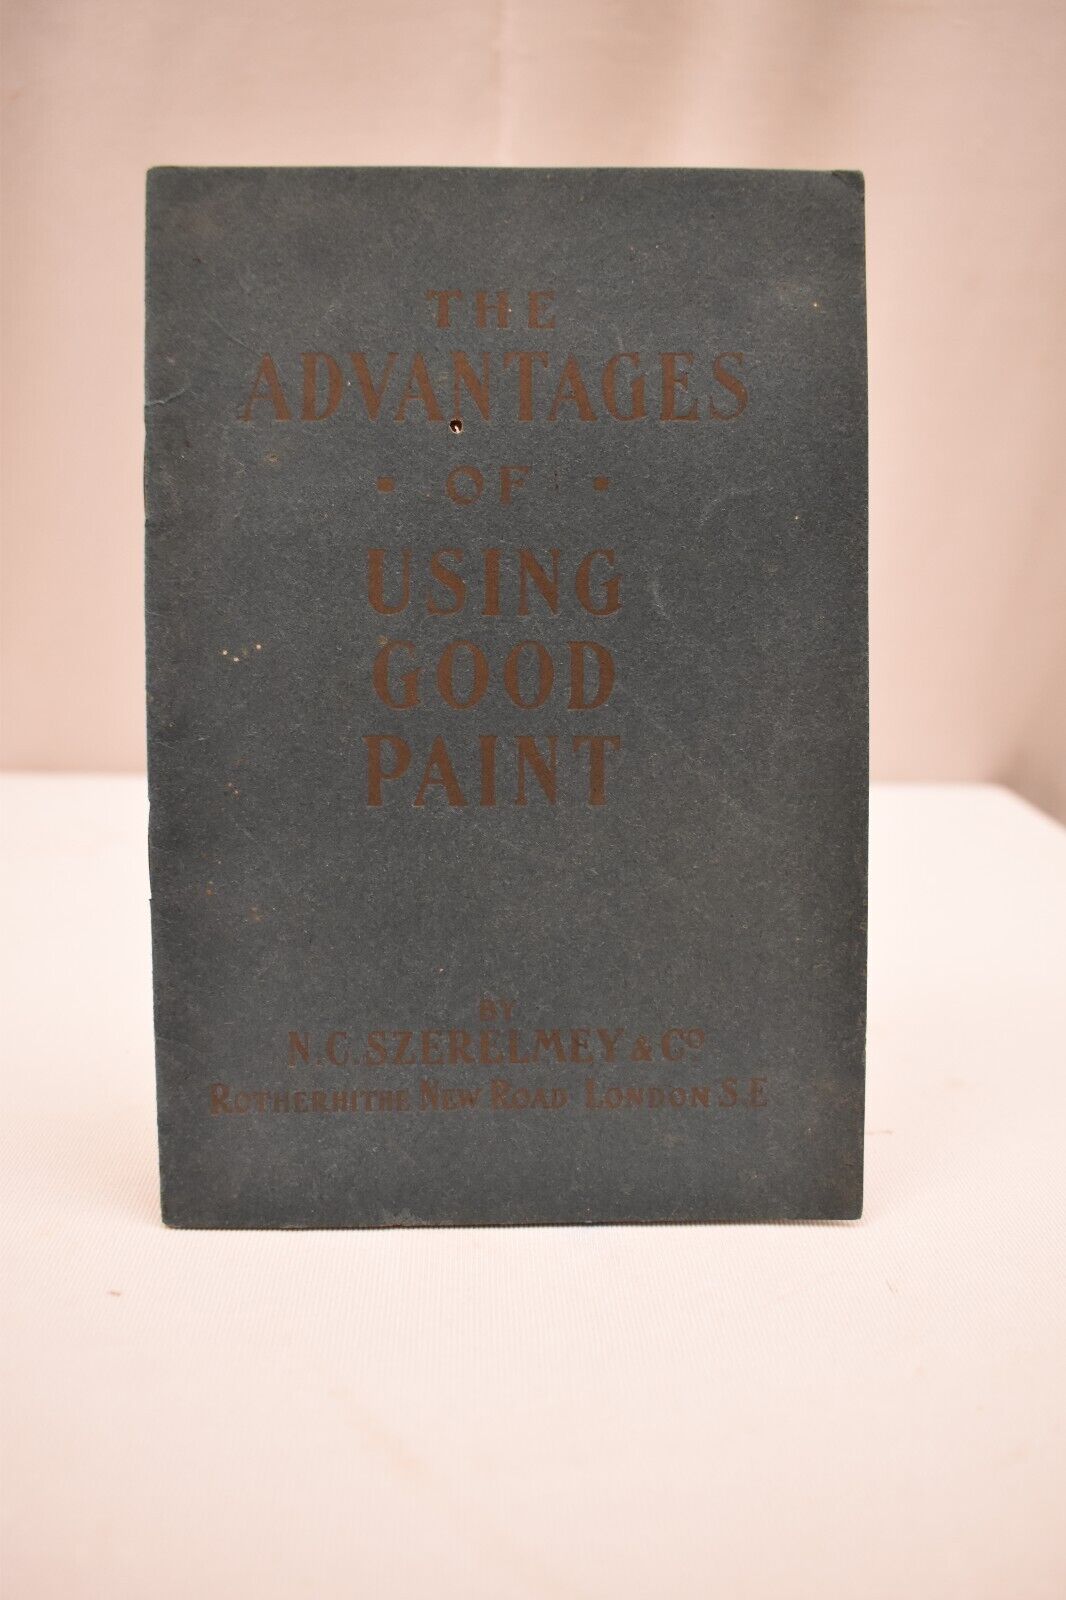 Antique The Advantages Of Good Paint Descriptive Book N C Szerelmey And Co Old